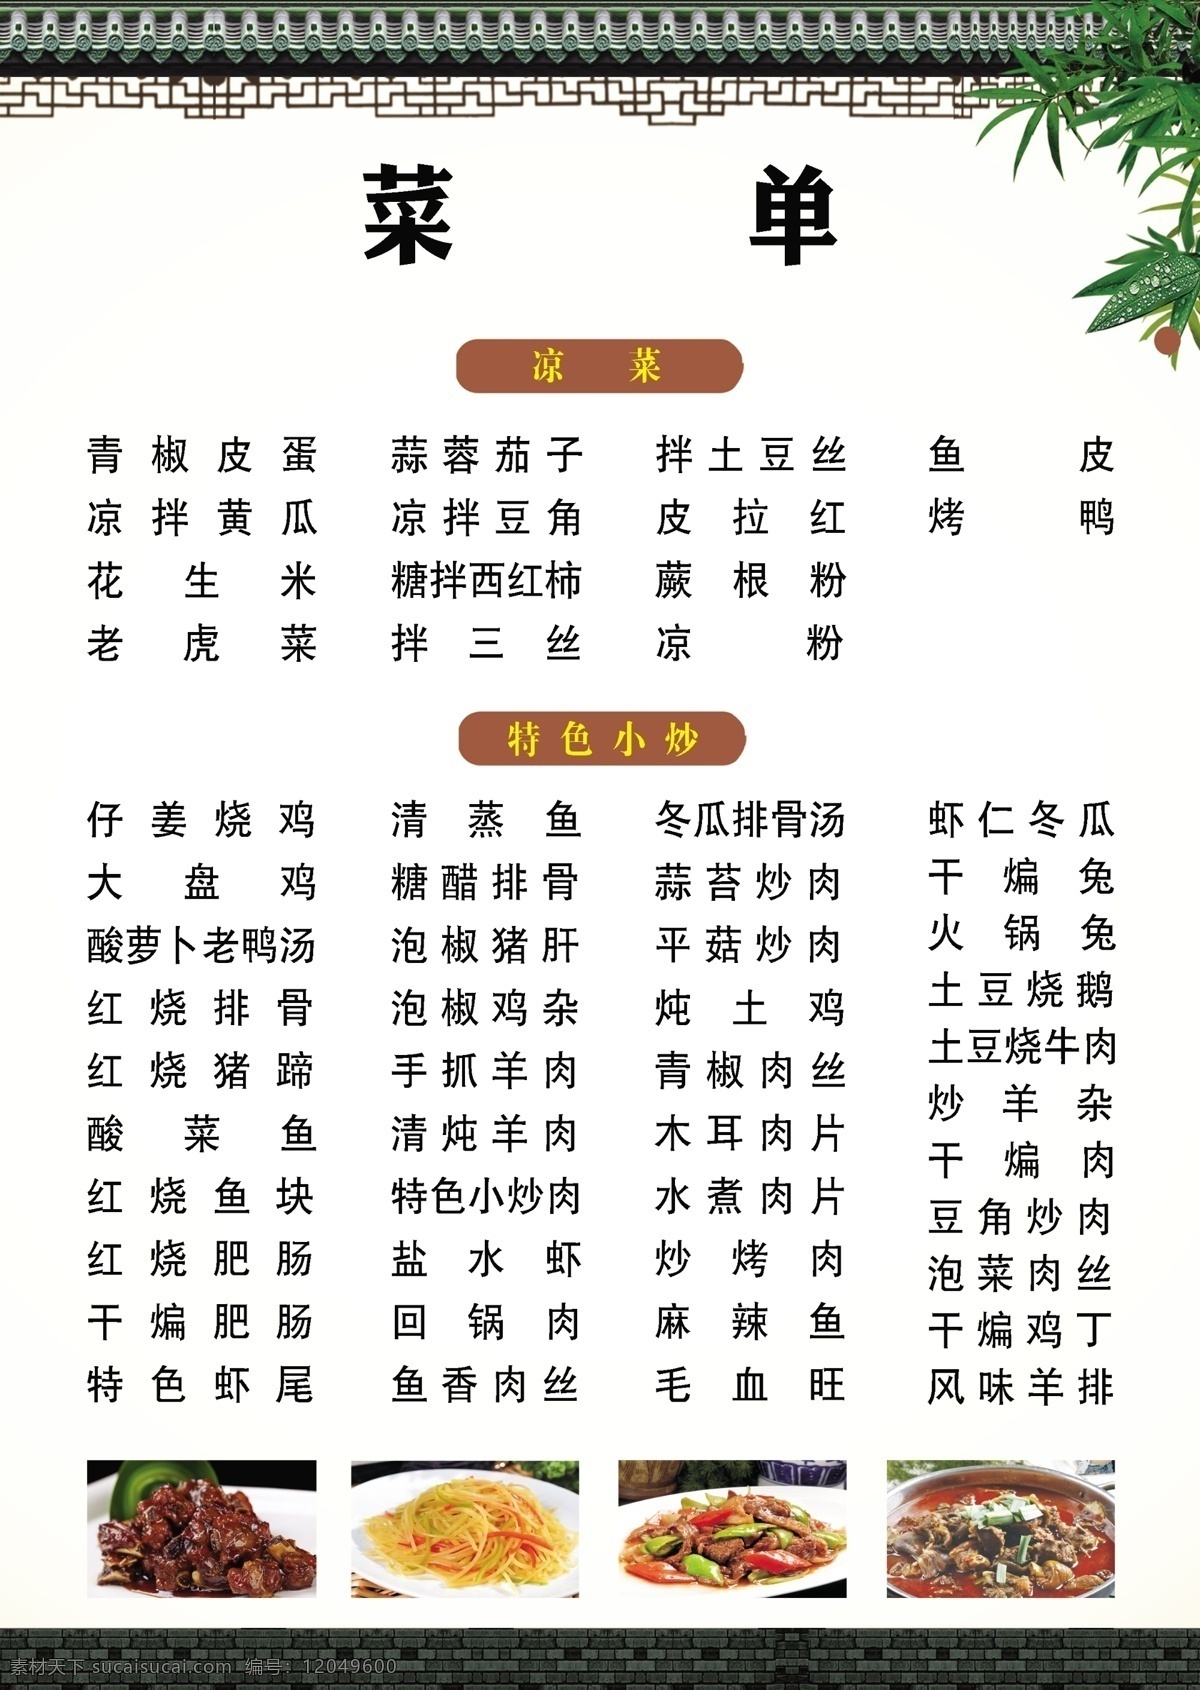 中式菜单 个性菜单 烧烤店菜单 横版菜单 宣传单 dm宣传单 分层